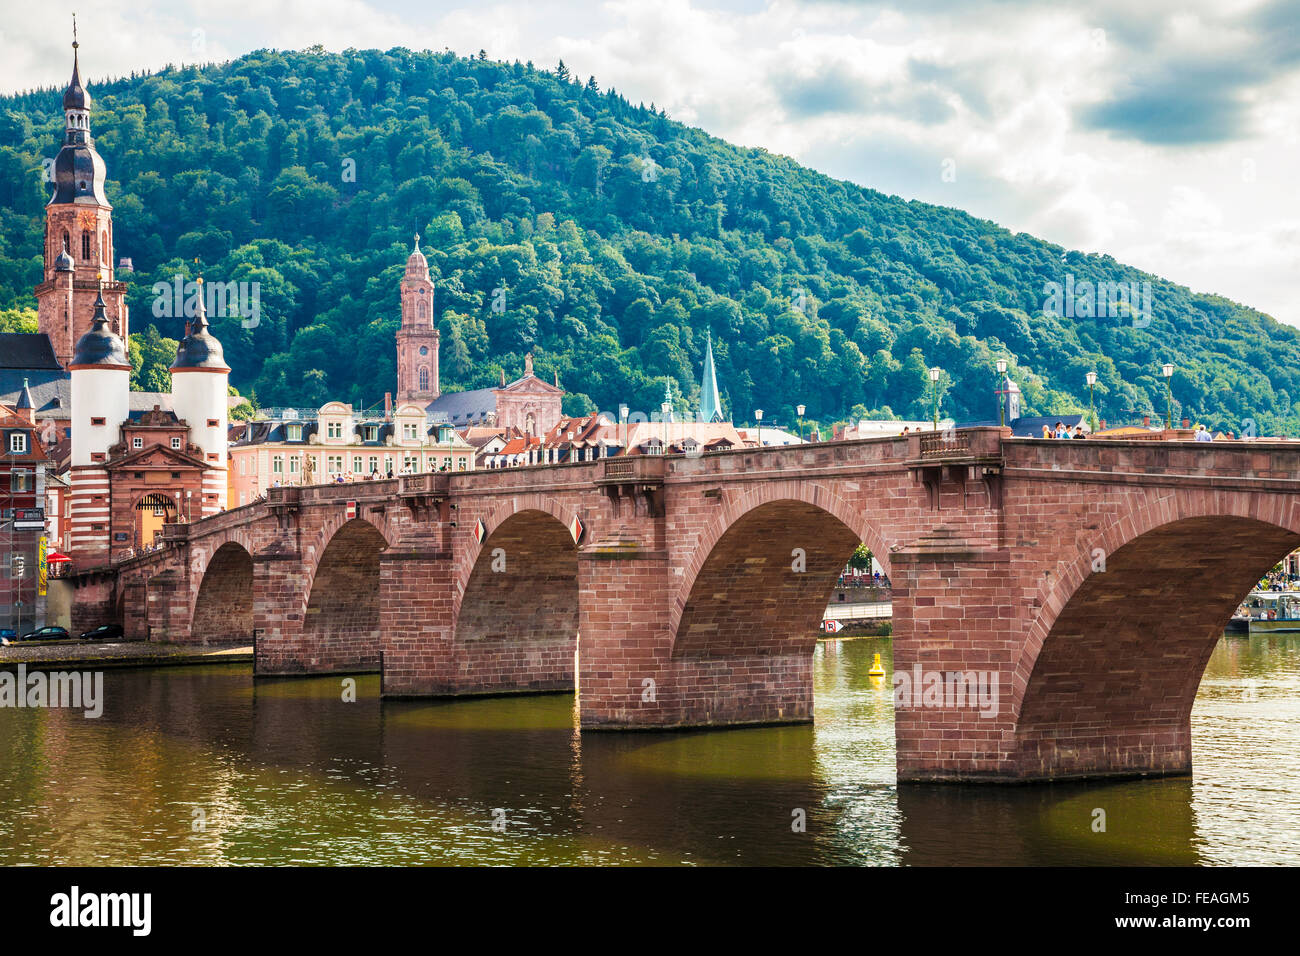 Die Alte Brücke, alte Brücke oder Karl-Theodor-Brücke und Heiliggeistkirche Turmspitze in Heidelberg. Stockfoto